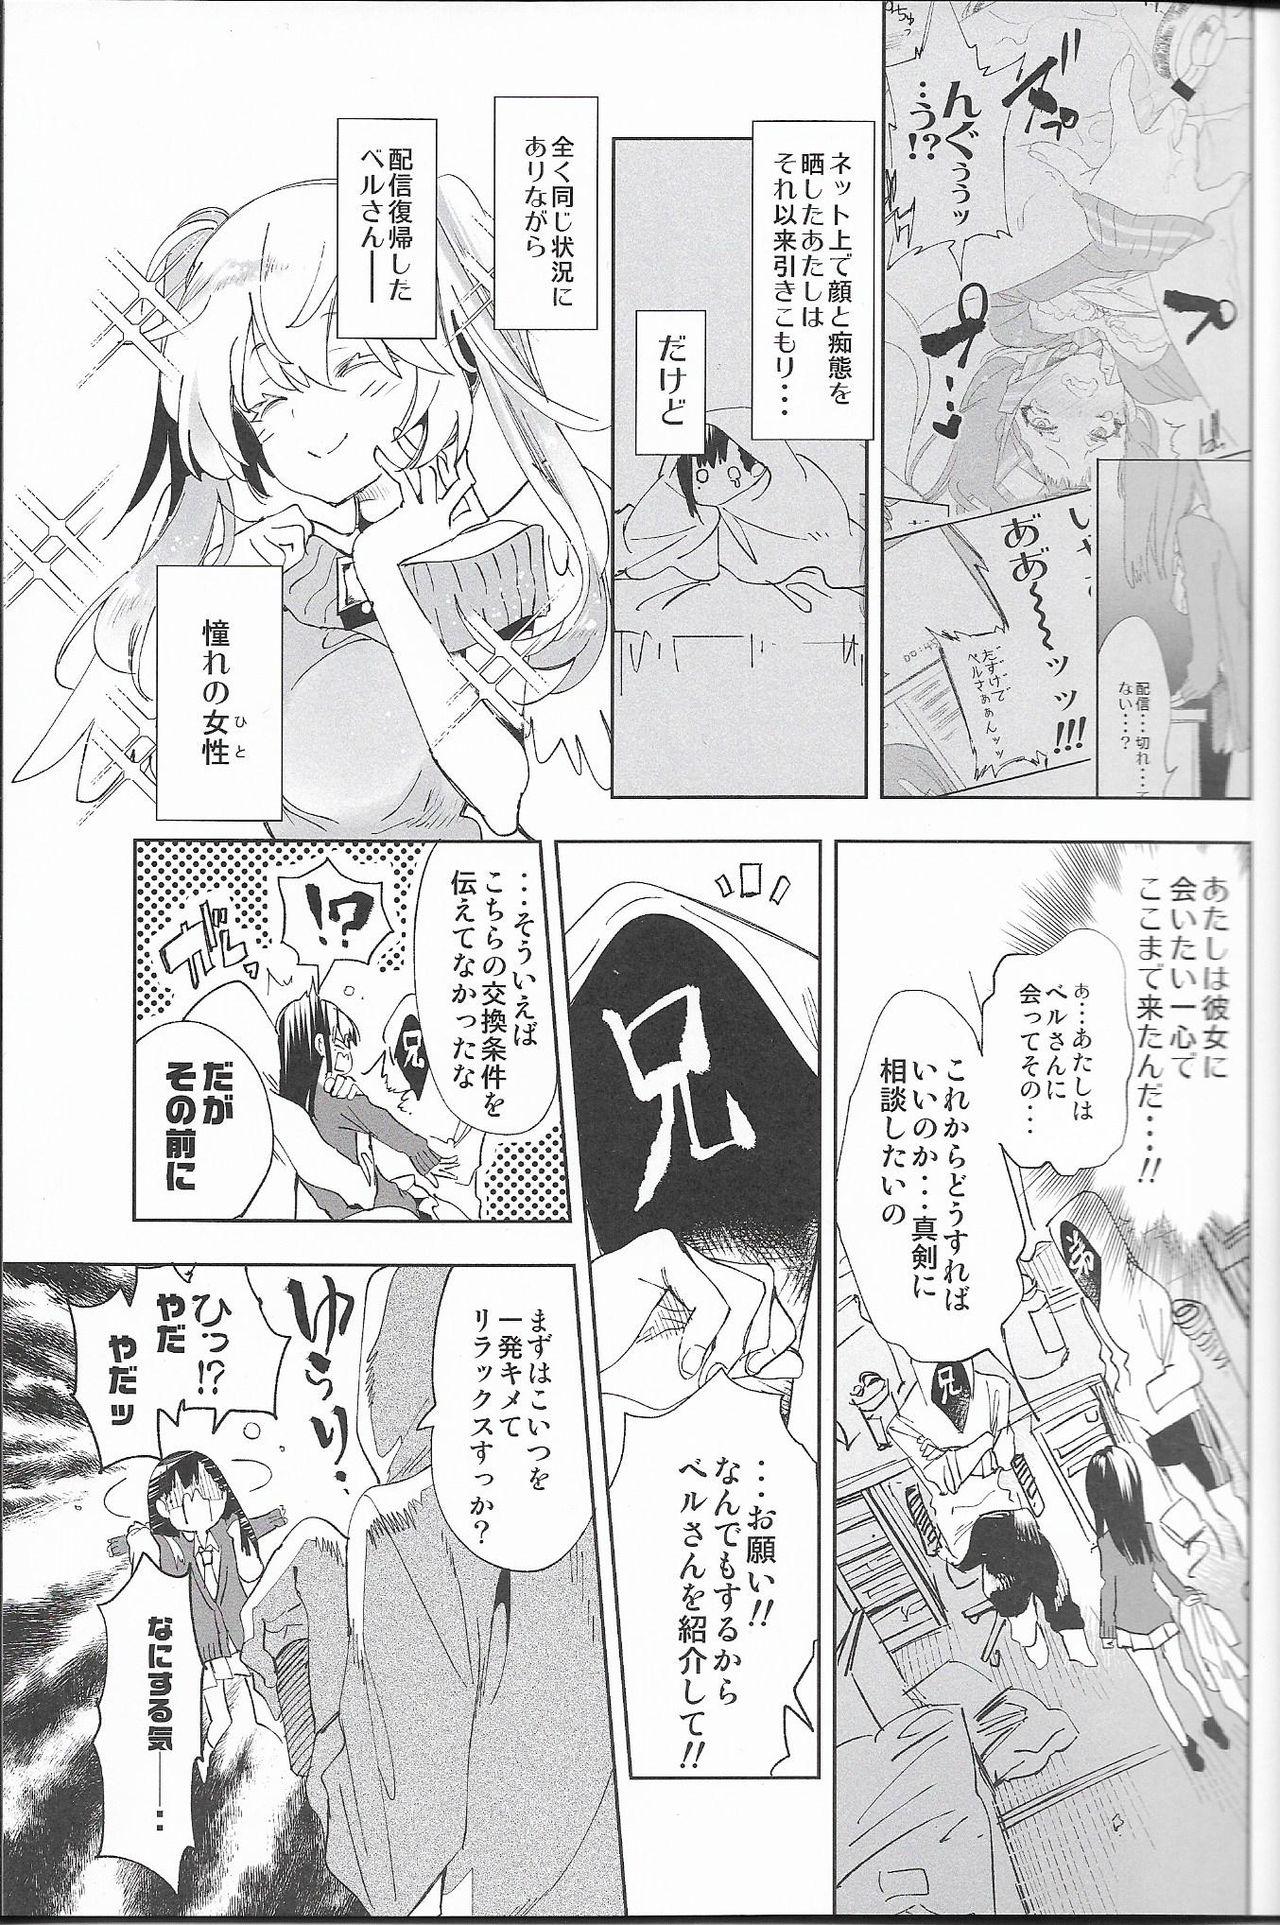 Stepsiblings Housoujiko 4 - Original Teenfuns - Page 6